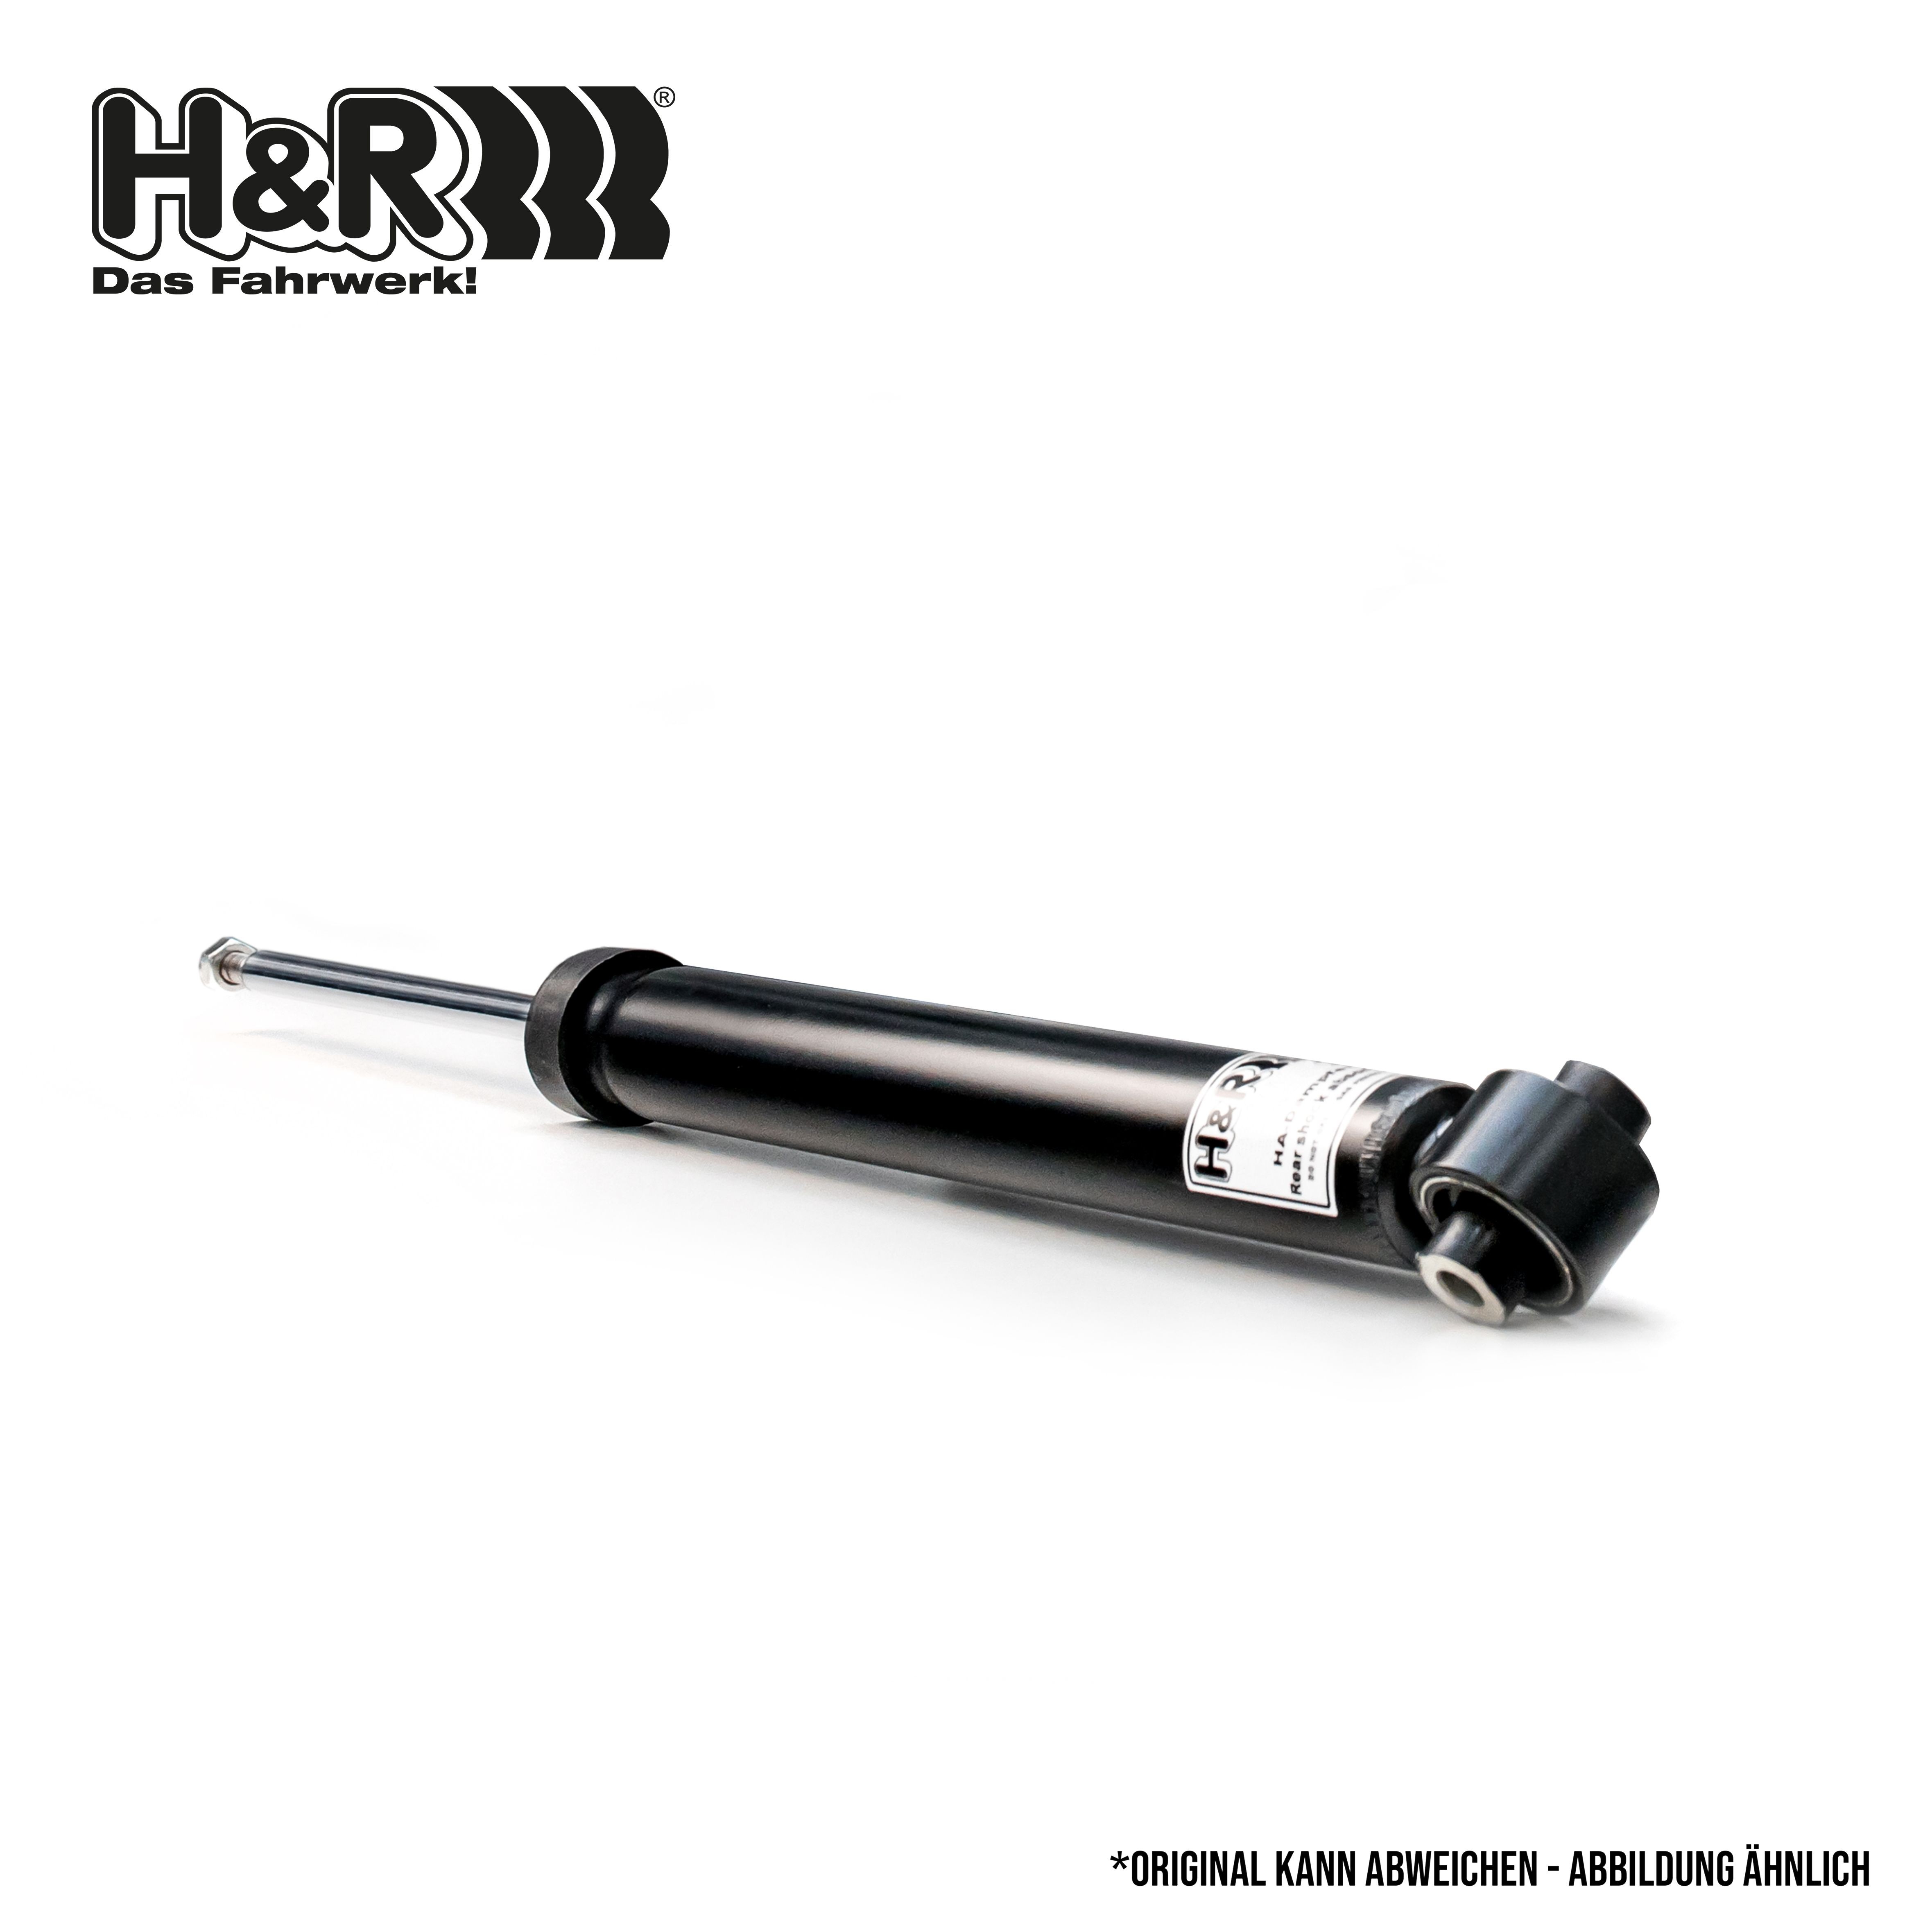 H&R Rear Axle Shocks D35-1020-01 buy